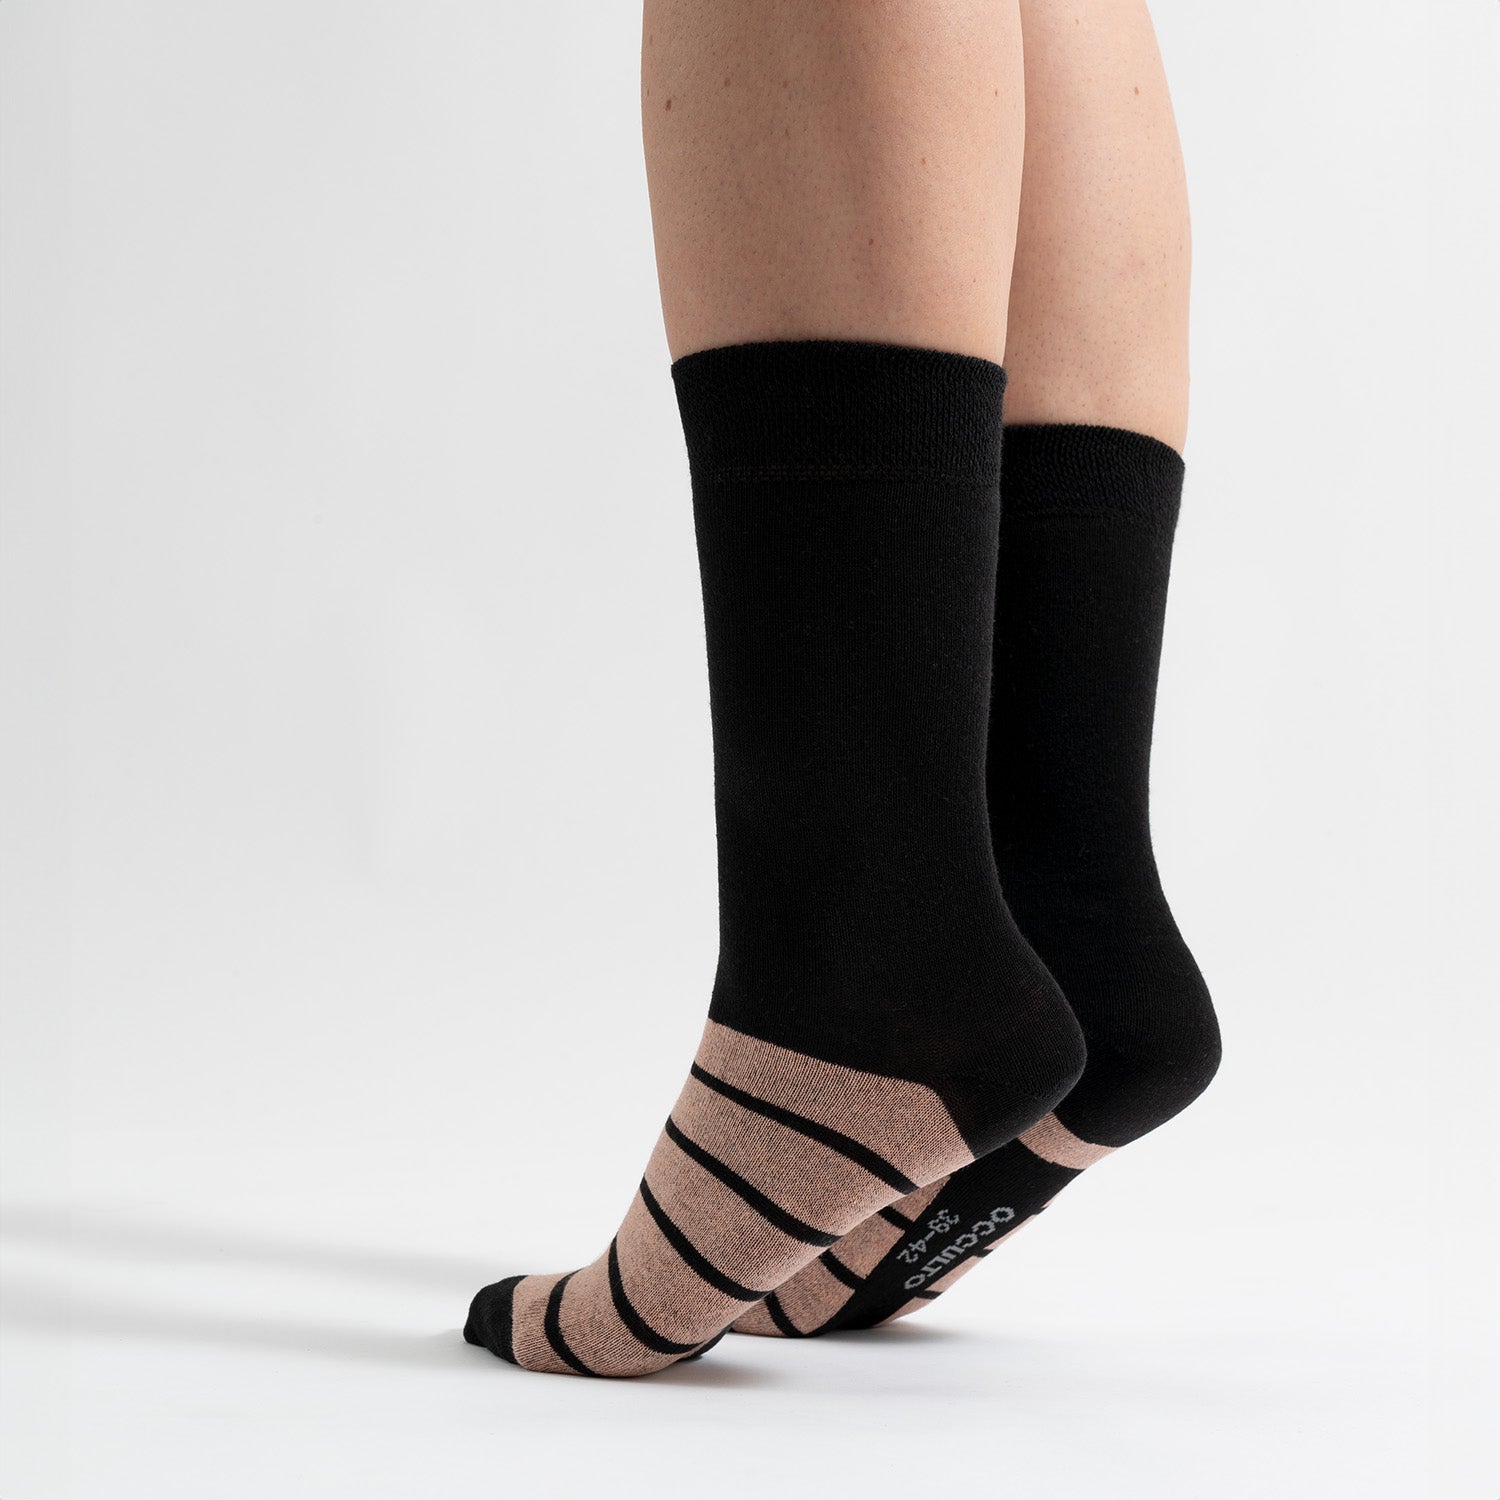 Damen Farbige Socken 10er Pack (Modell: Laura)